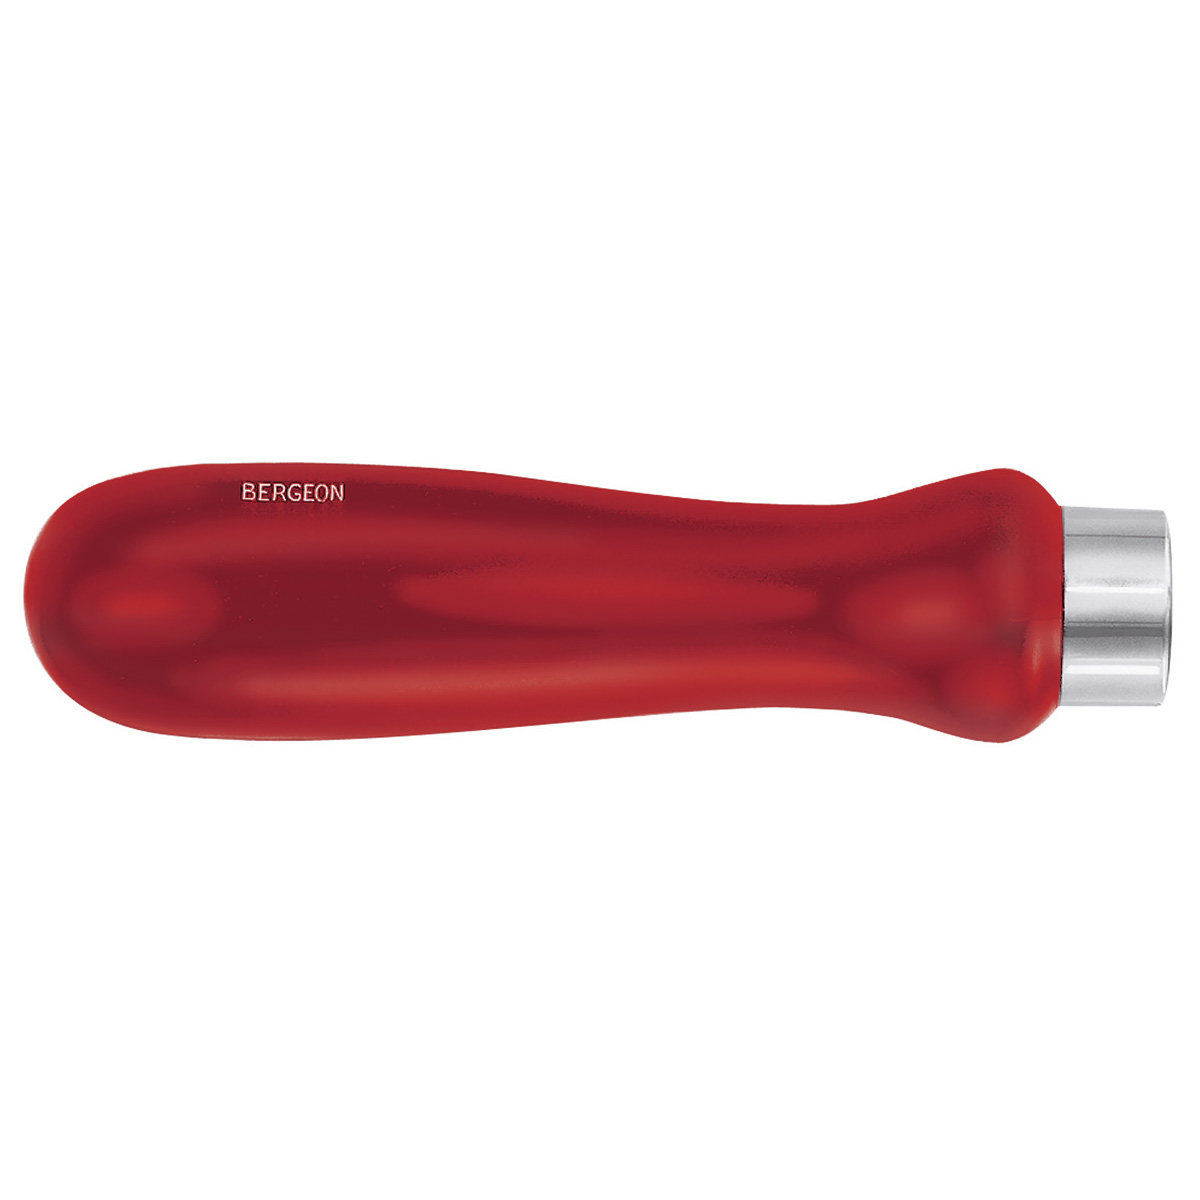 Bergeon plastic handle N°5091-18-R for tools, ferrule Ø 18 mm, antislip